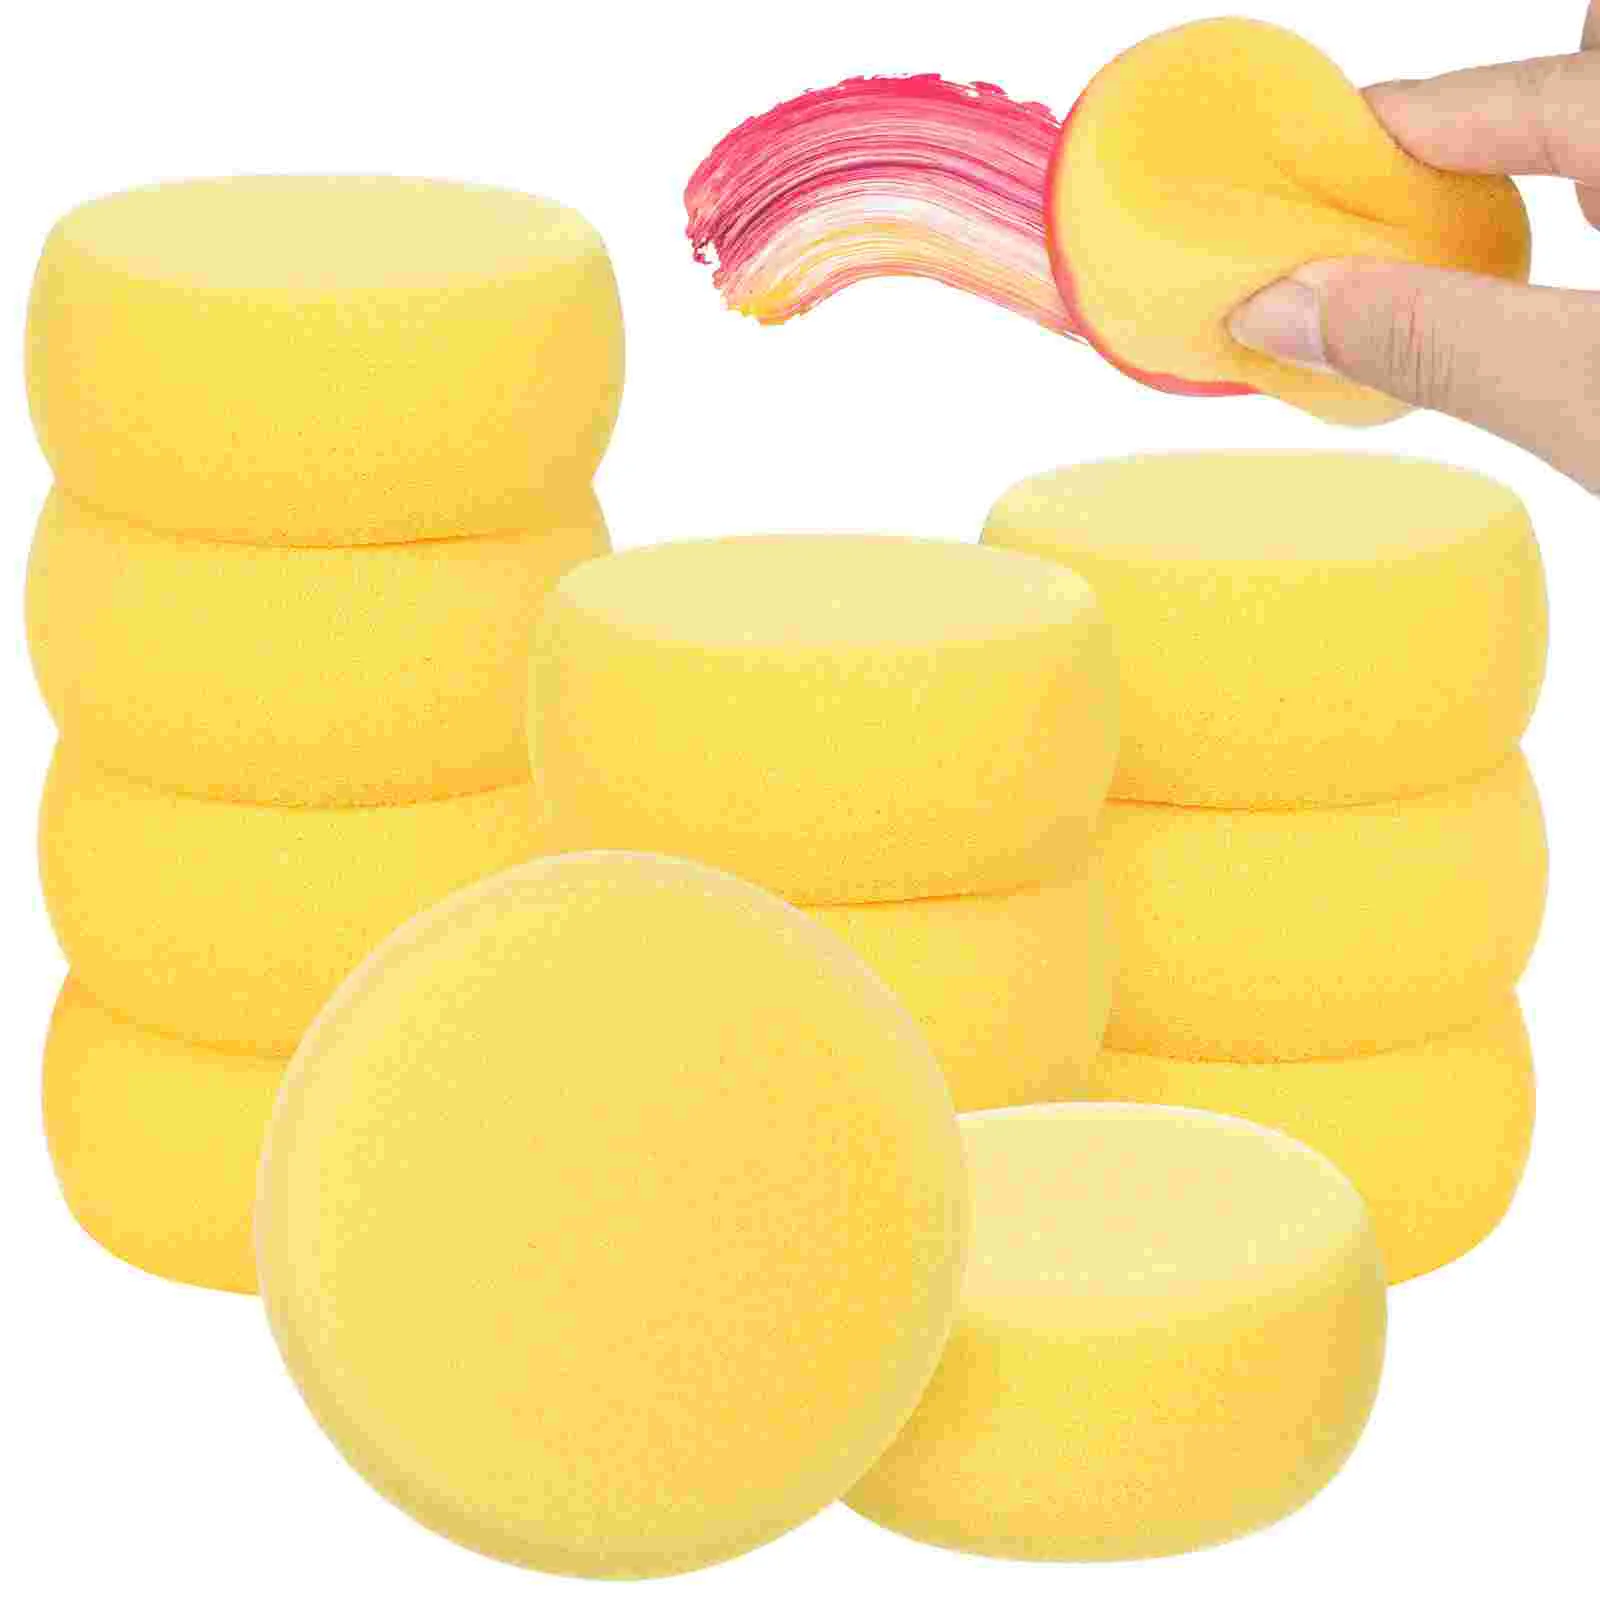 

Желтая круглая губка для торта, круглые синтетические акварельные художественные губки для рисования, поделок, керамики, круглая губка для торта (желтая)